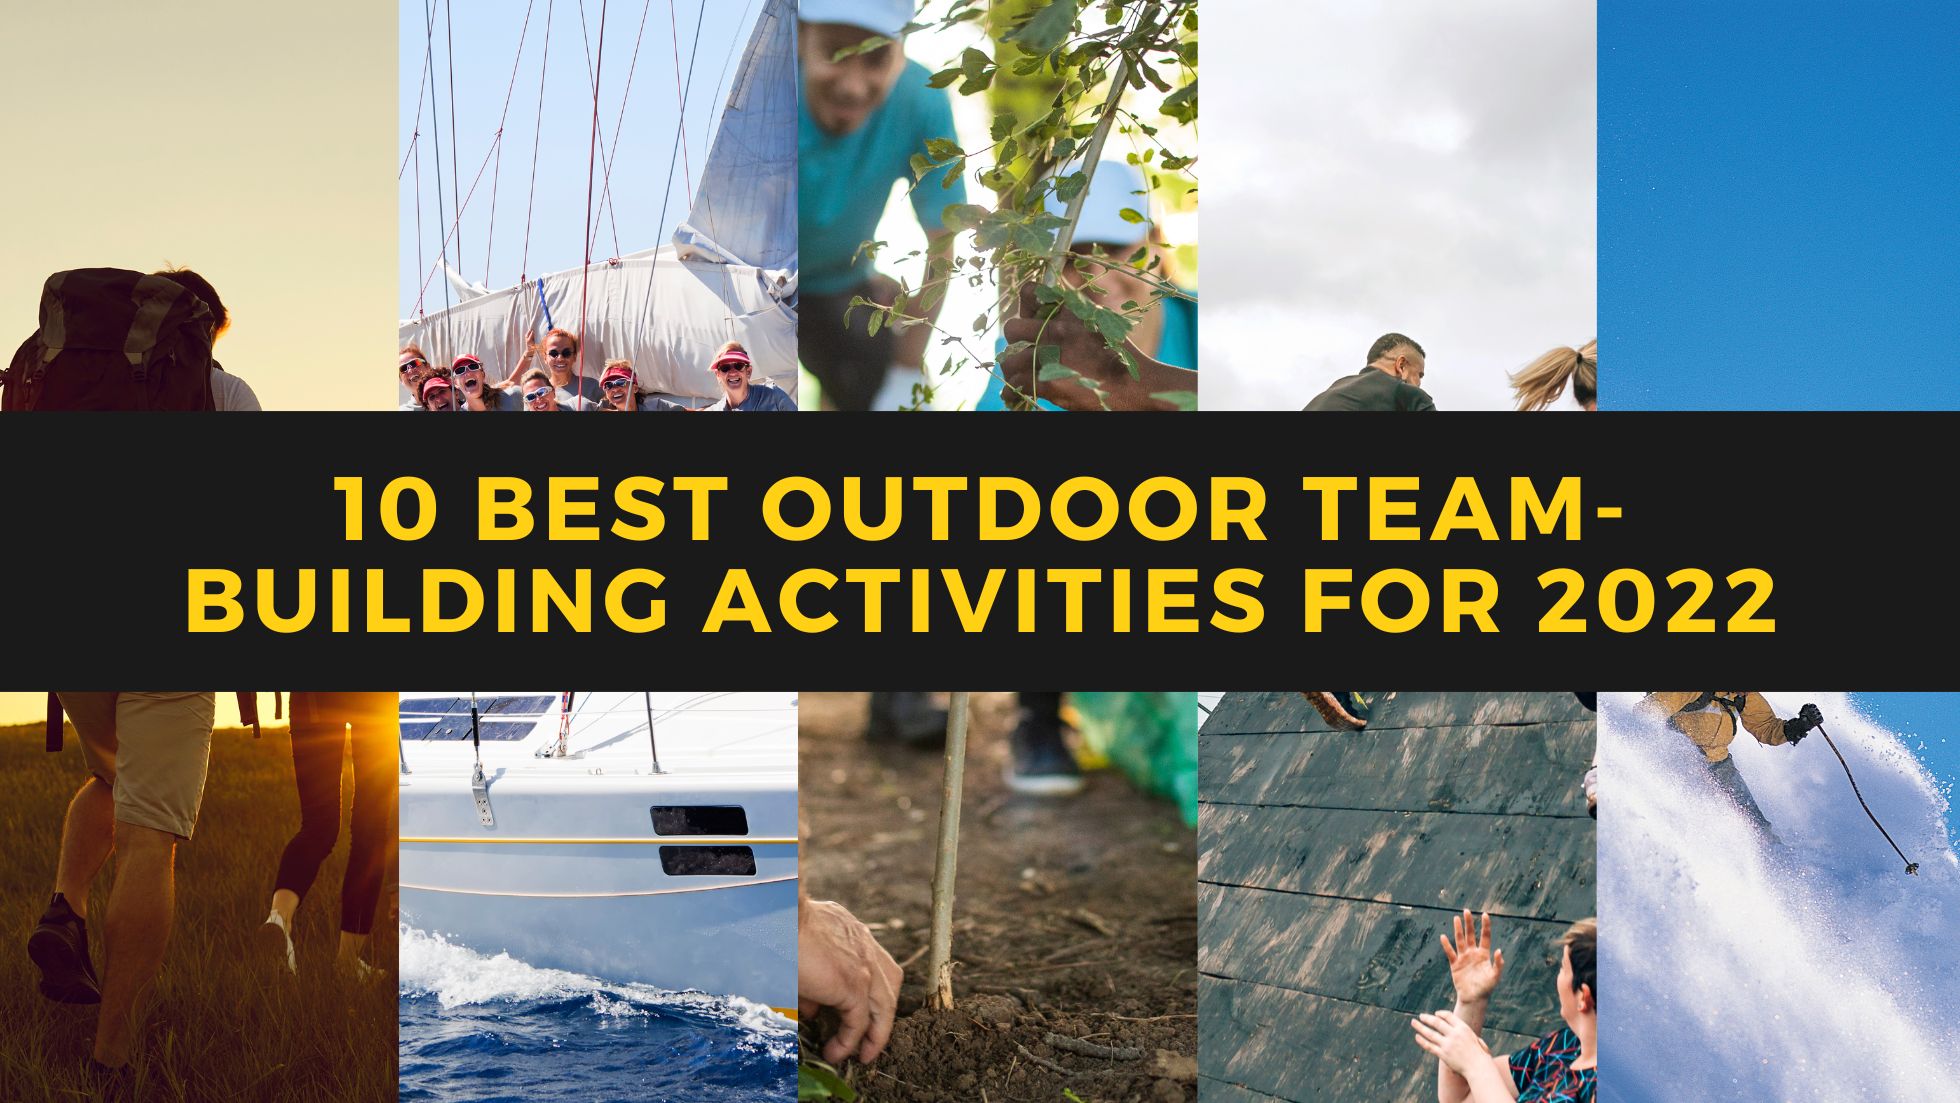 10 Best Outdoor Team-Building Activities for 2022